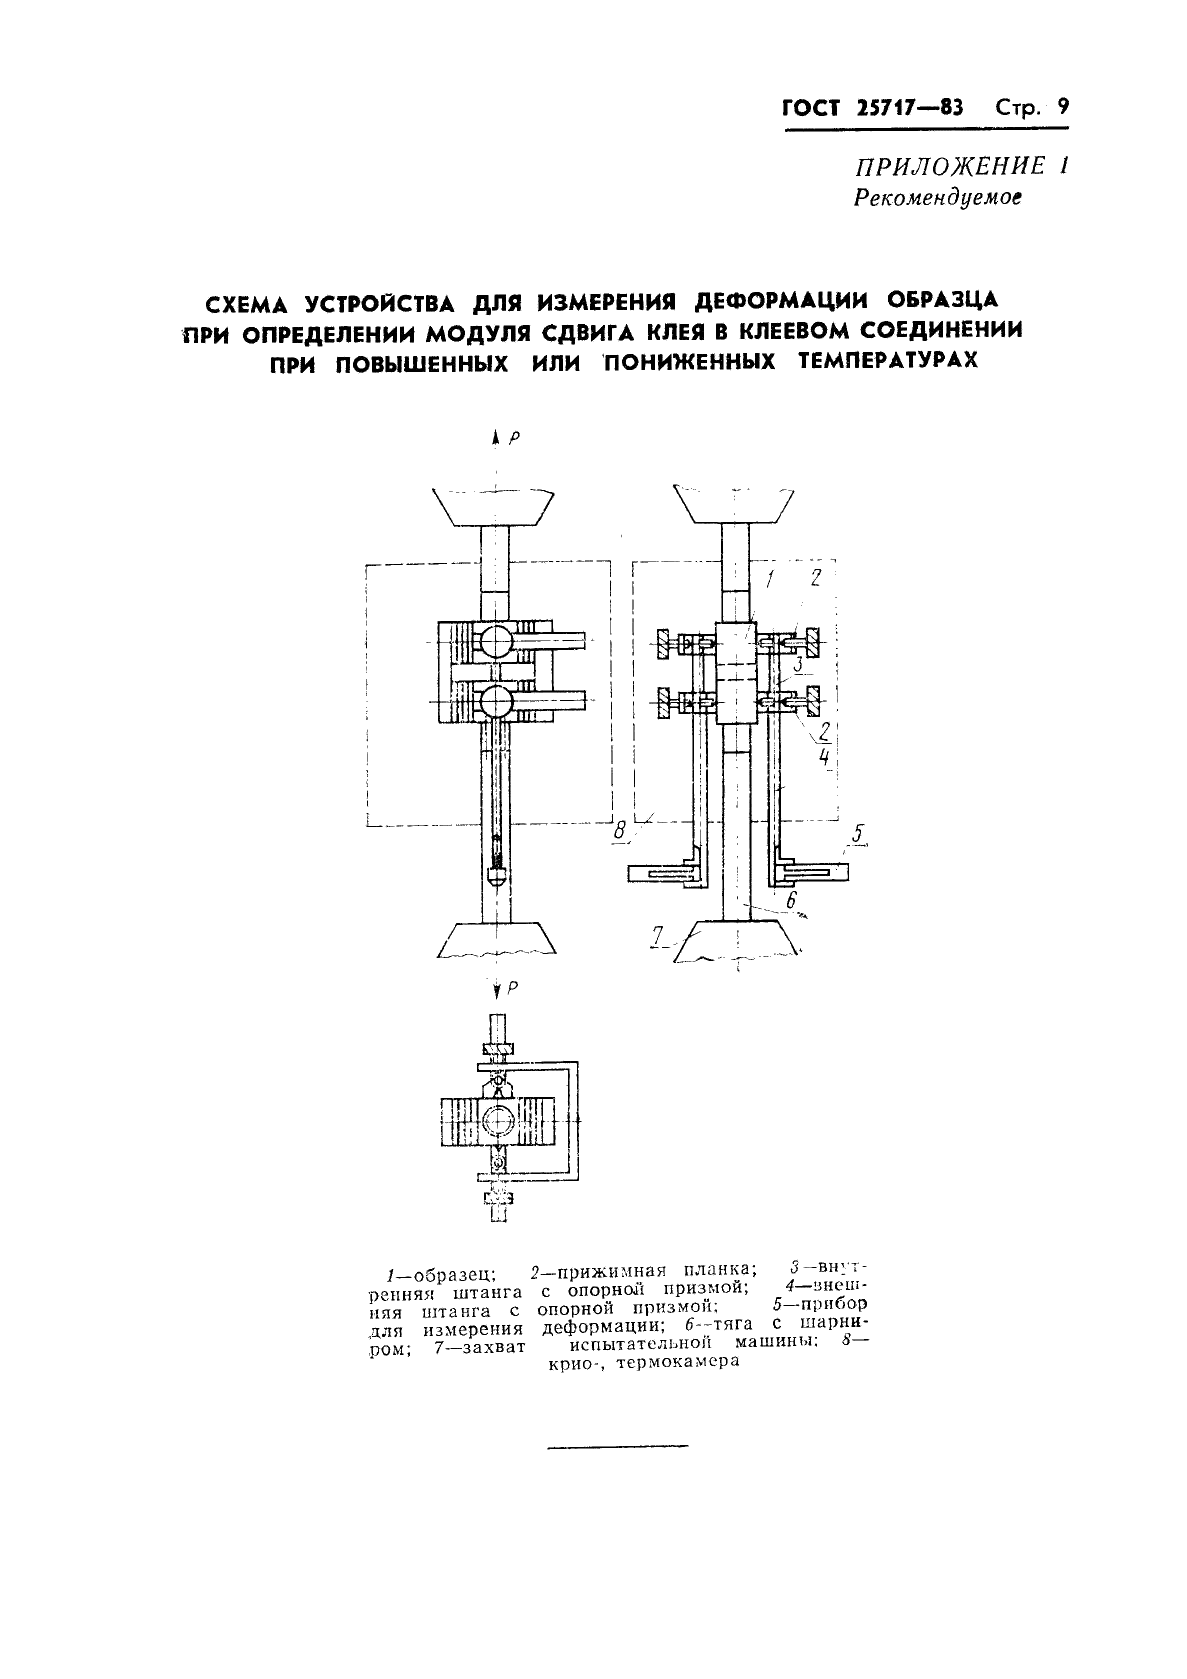 ГОСТ 25717-83 Клеи. Методы определения модуля сдвига клея в клеевом соединении (фото 10 из 15)